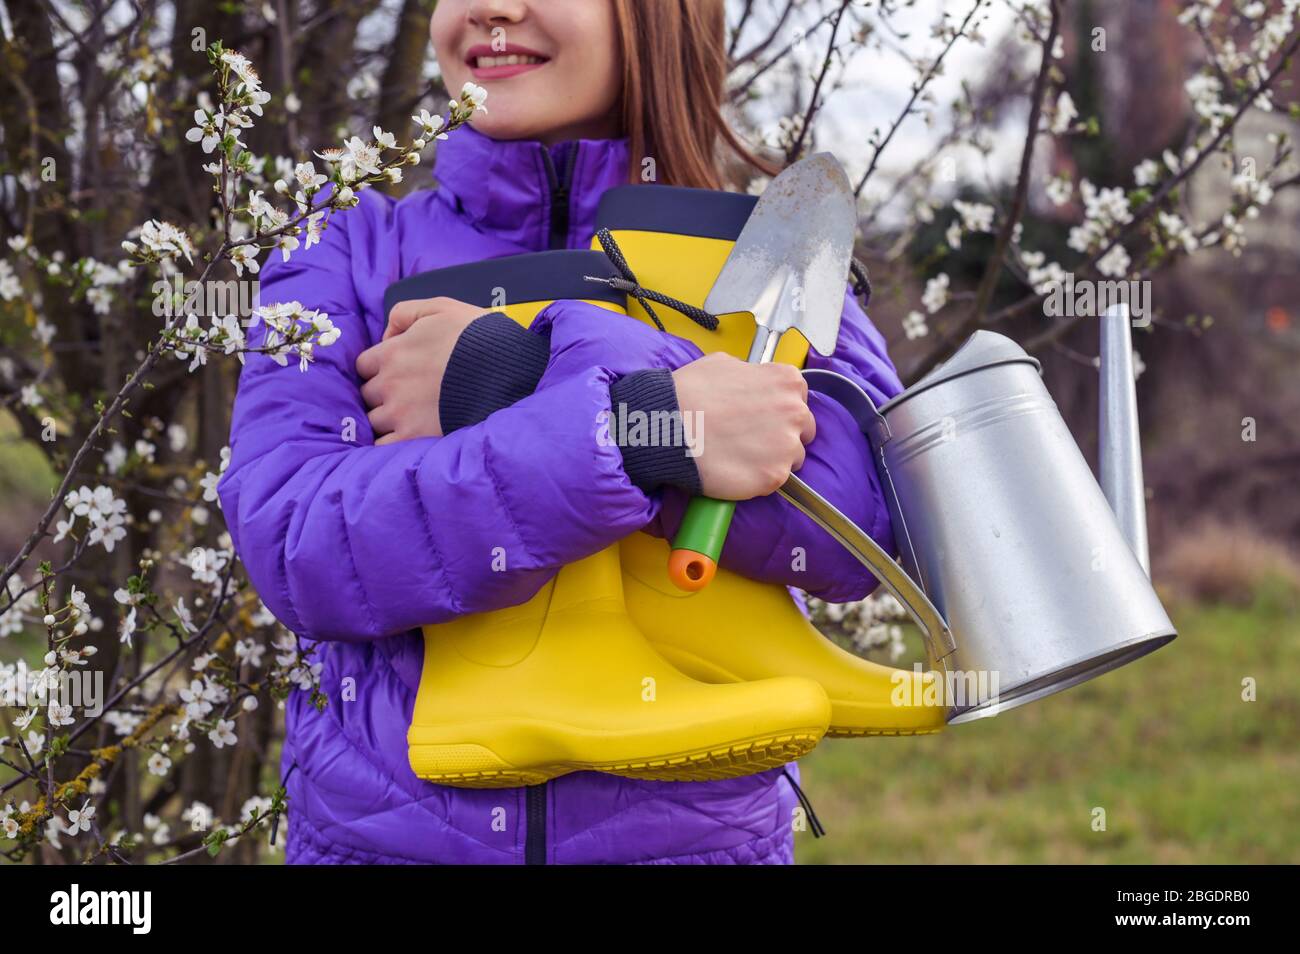 Ein Mädchen in einer violetten Jacke hält leuchtend gelbe Gummistiefel,  eine Gießkanne, einen Spaten in ihren Händen. Die Blütezeit der Bäume in  den Gärten und die Arbeitszeit auf persönlichen Parzellen. Frühling  Stockfotografie -